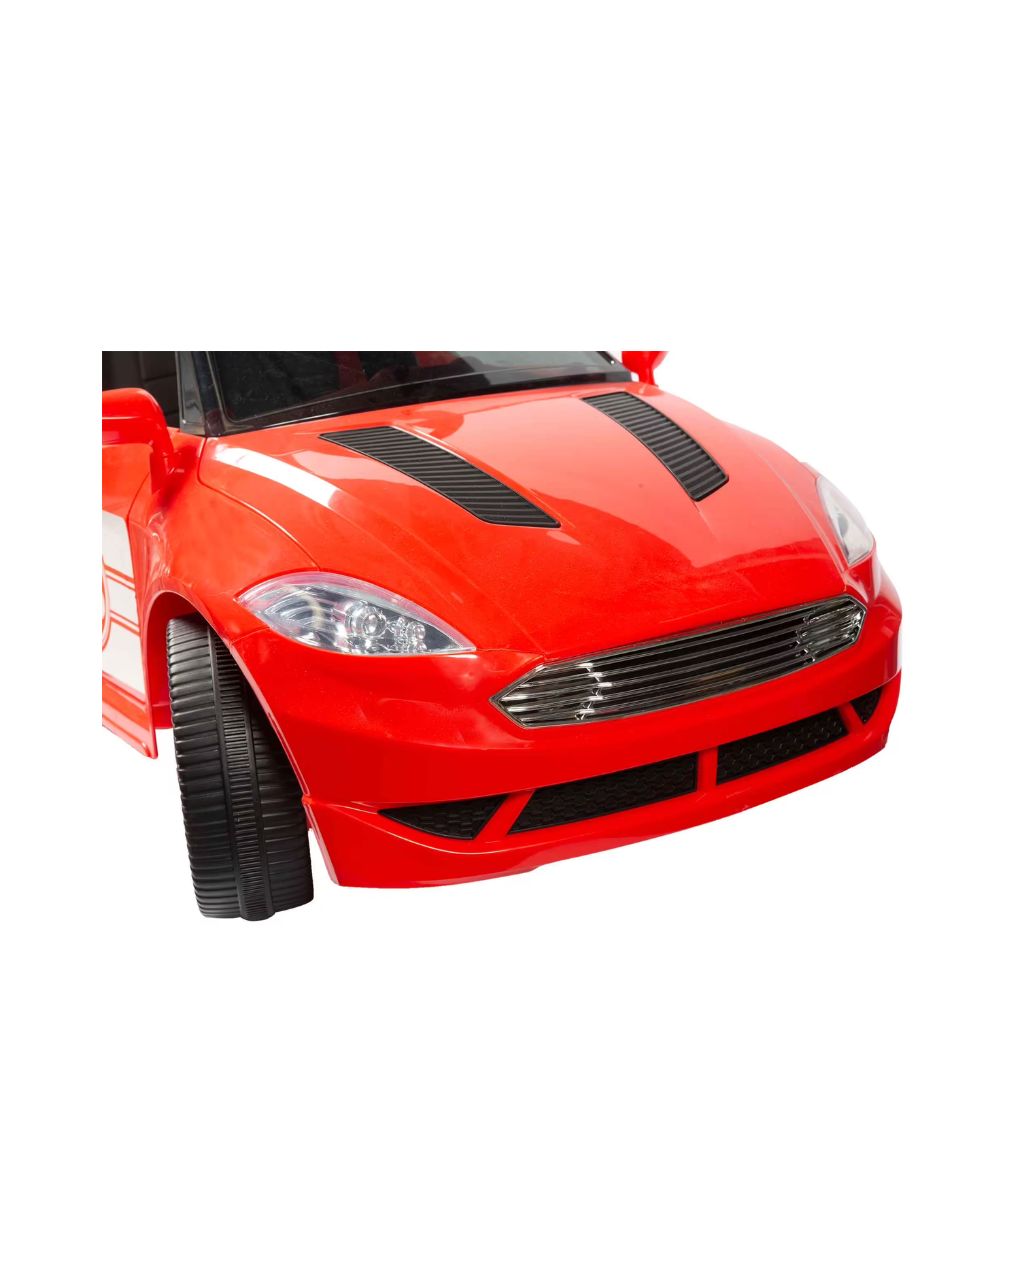 Sun & sport - παιδικό ηλεκτροκίνητο σπορ αυτοκίνητο 6v με τηλεχειριστήριο prg00233 - Sun&Sport